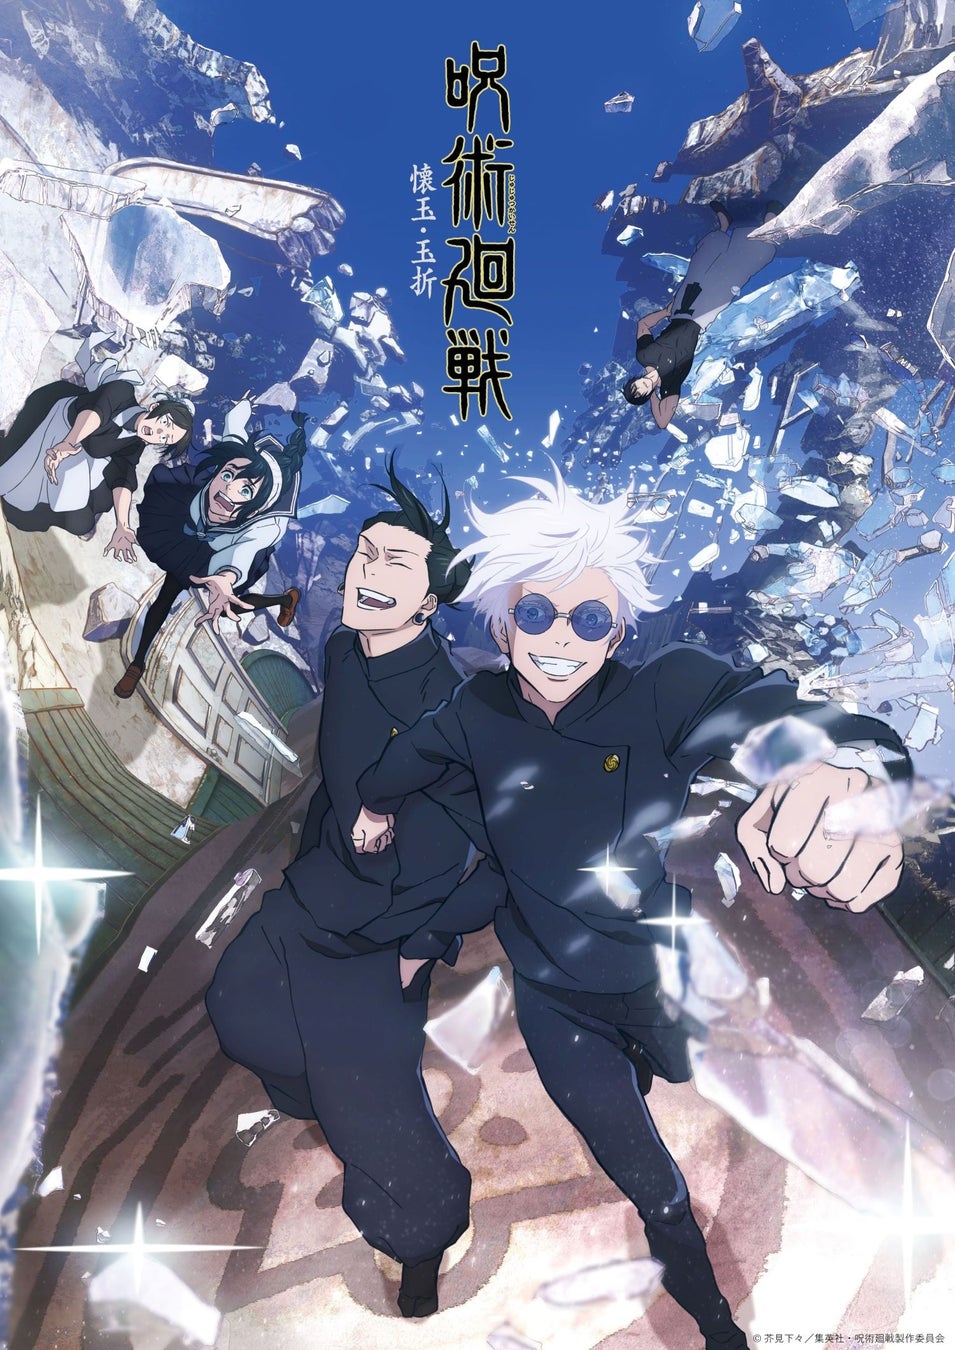 キタニタツヤ、新曲「青のすみか」がTVアニメ『呪術廻戦』「懐玉・玉折」 OPテーマに決定。7月19日にCDリリースも決定。